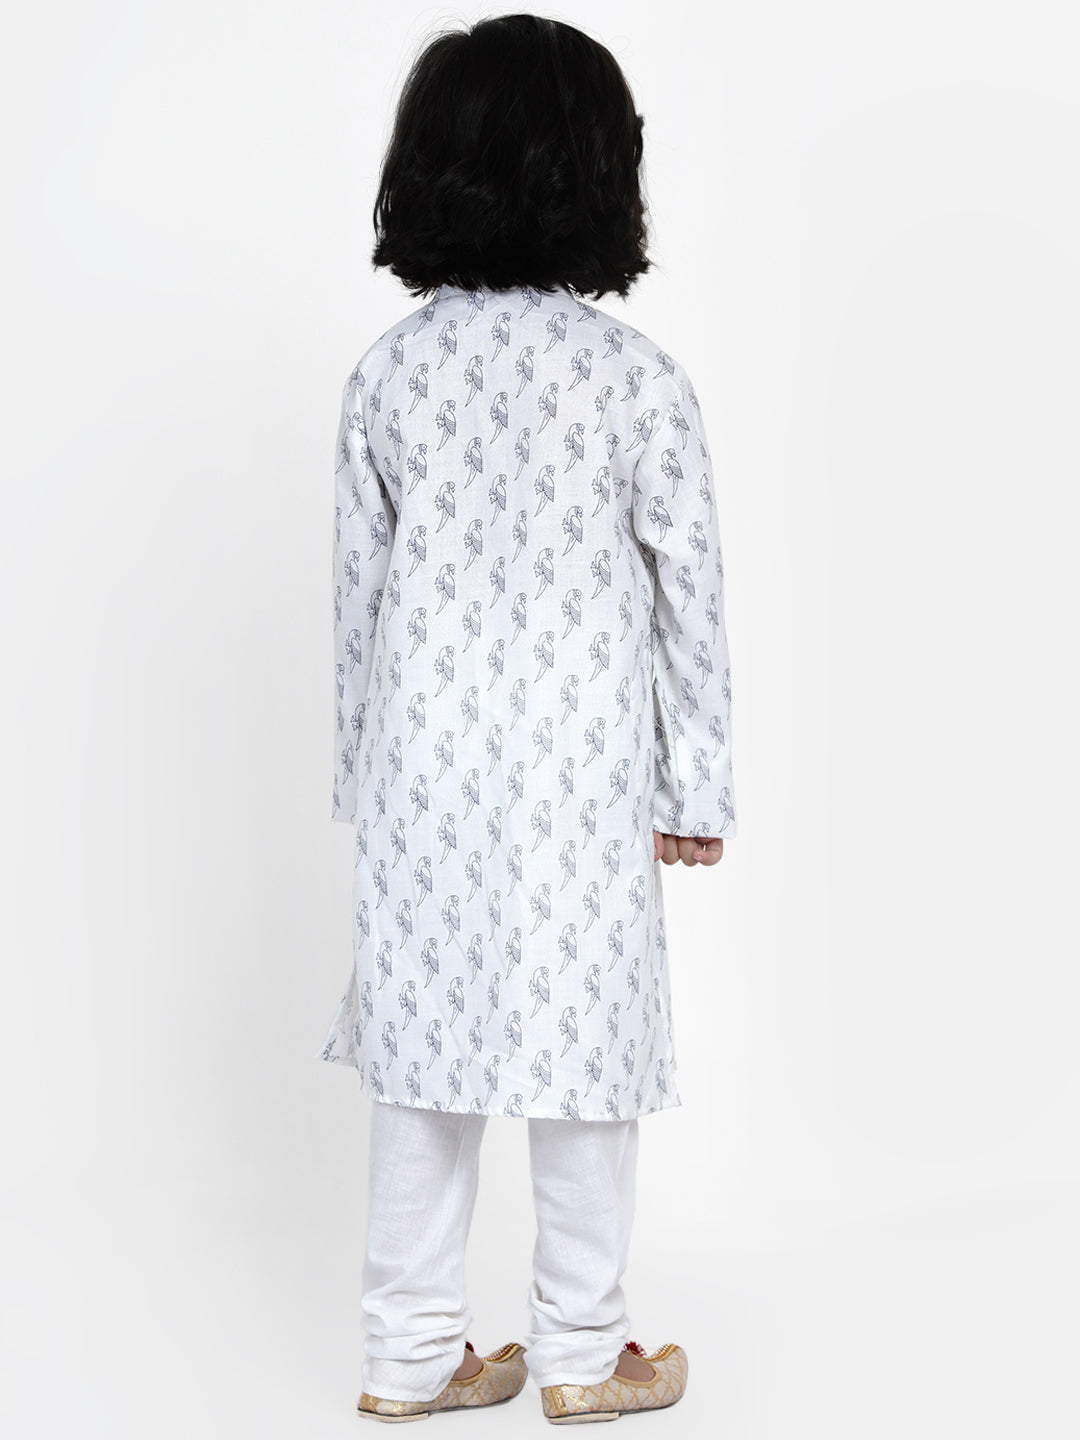 Boys White Printed Angrakha Kurta with Pyjamas